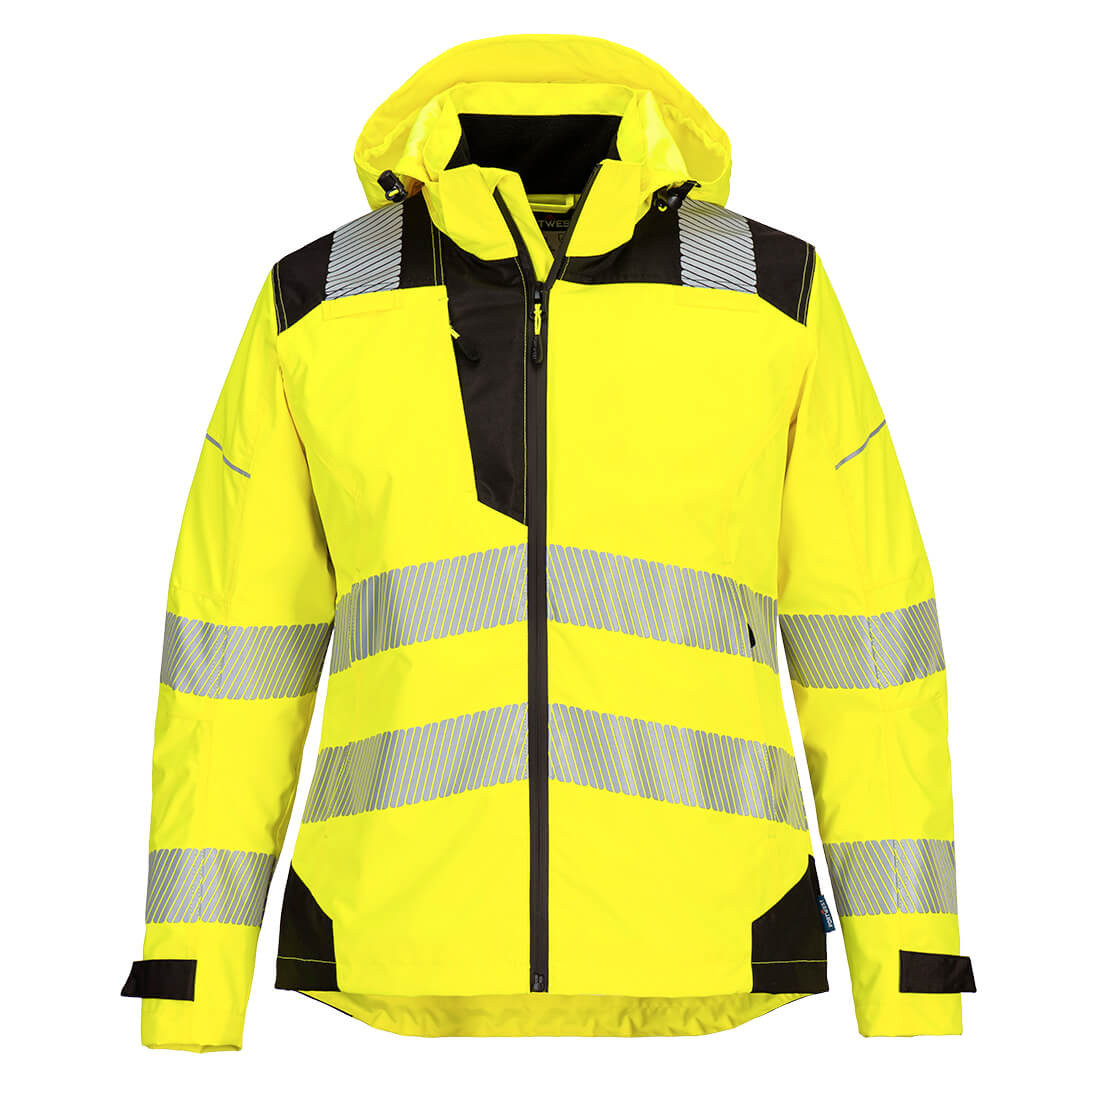 PW3 Hi-Vis Women's Rain Jacket - Safetywear